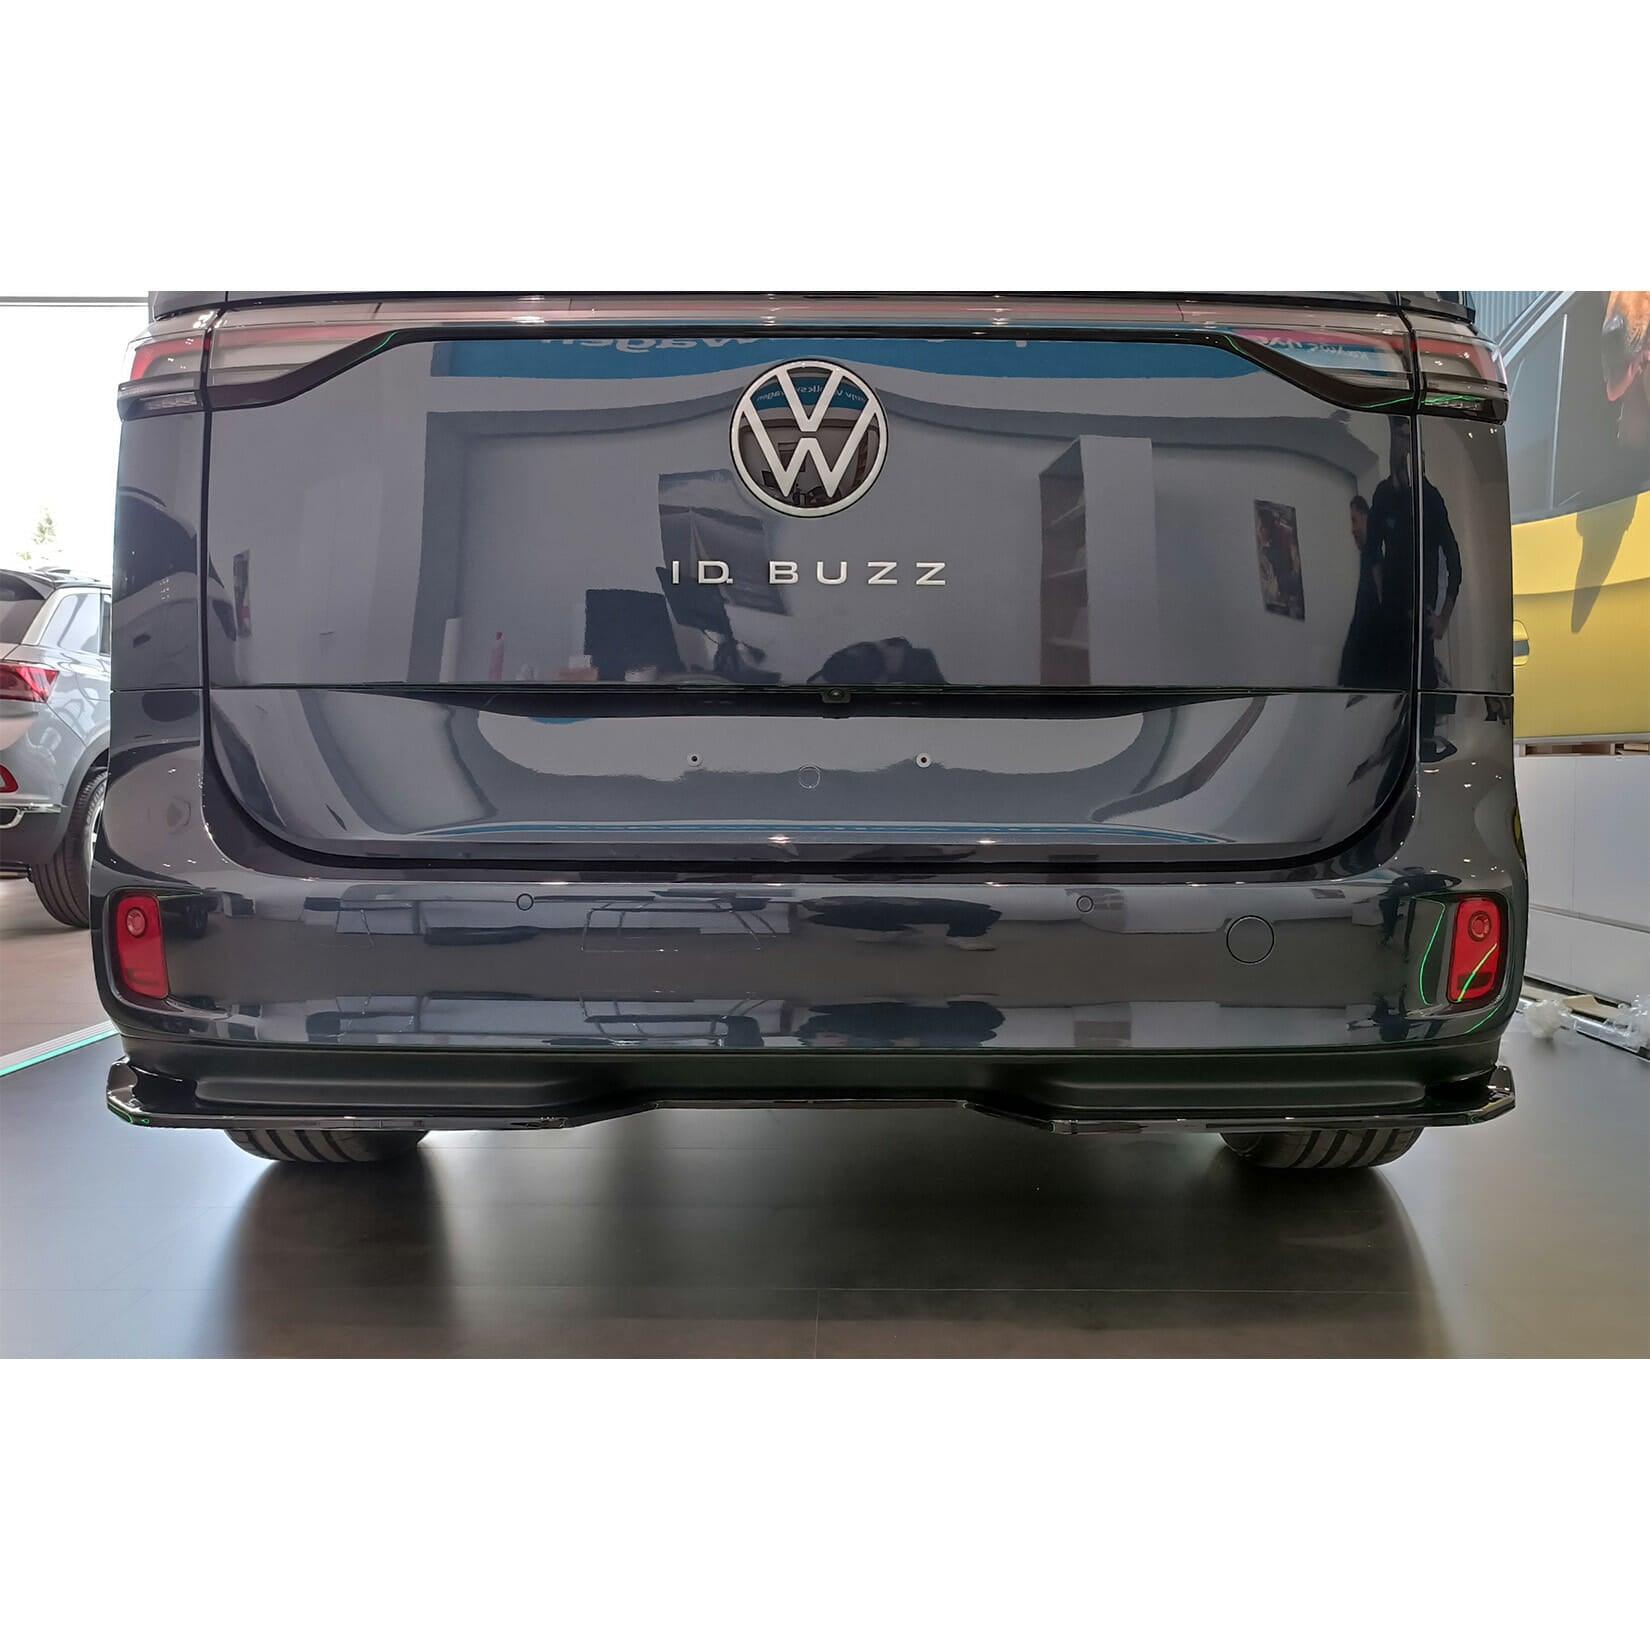 VW ID BUZZ 2021+ REAR DIFFUSER SPLITTER IN GLOSS BLACK - RisperStyling